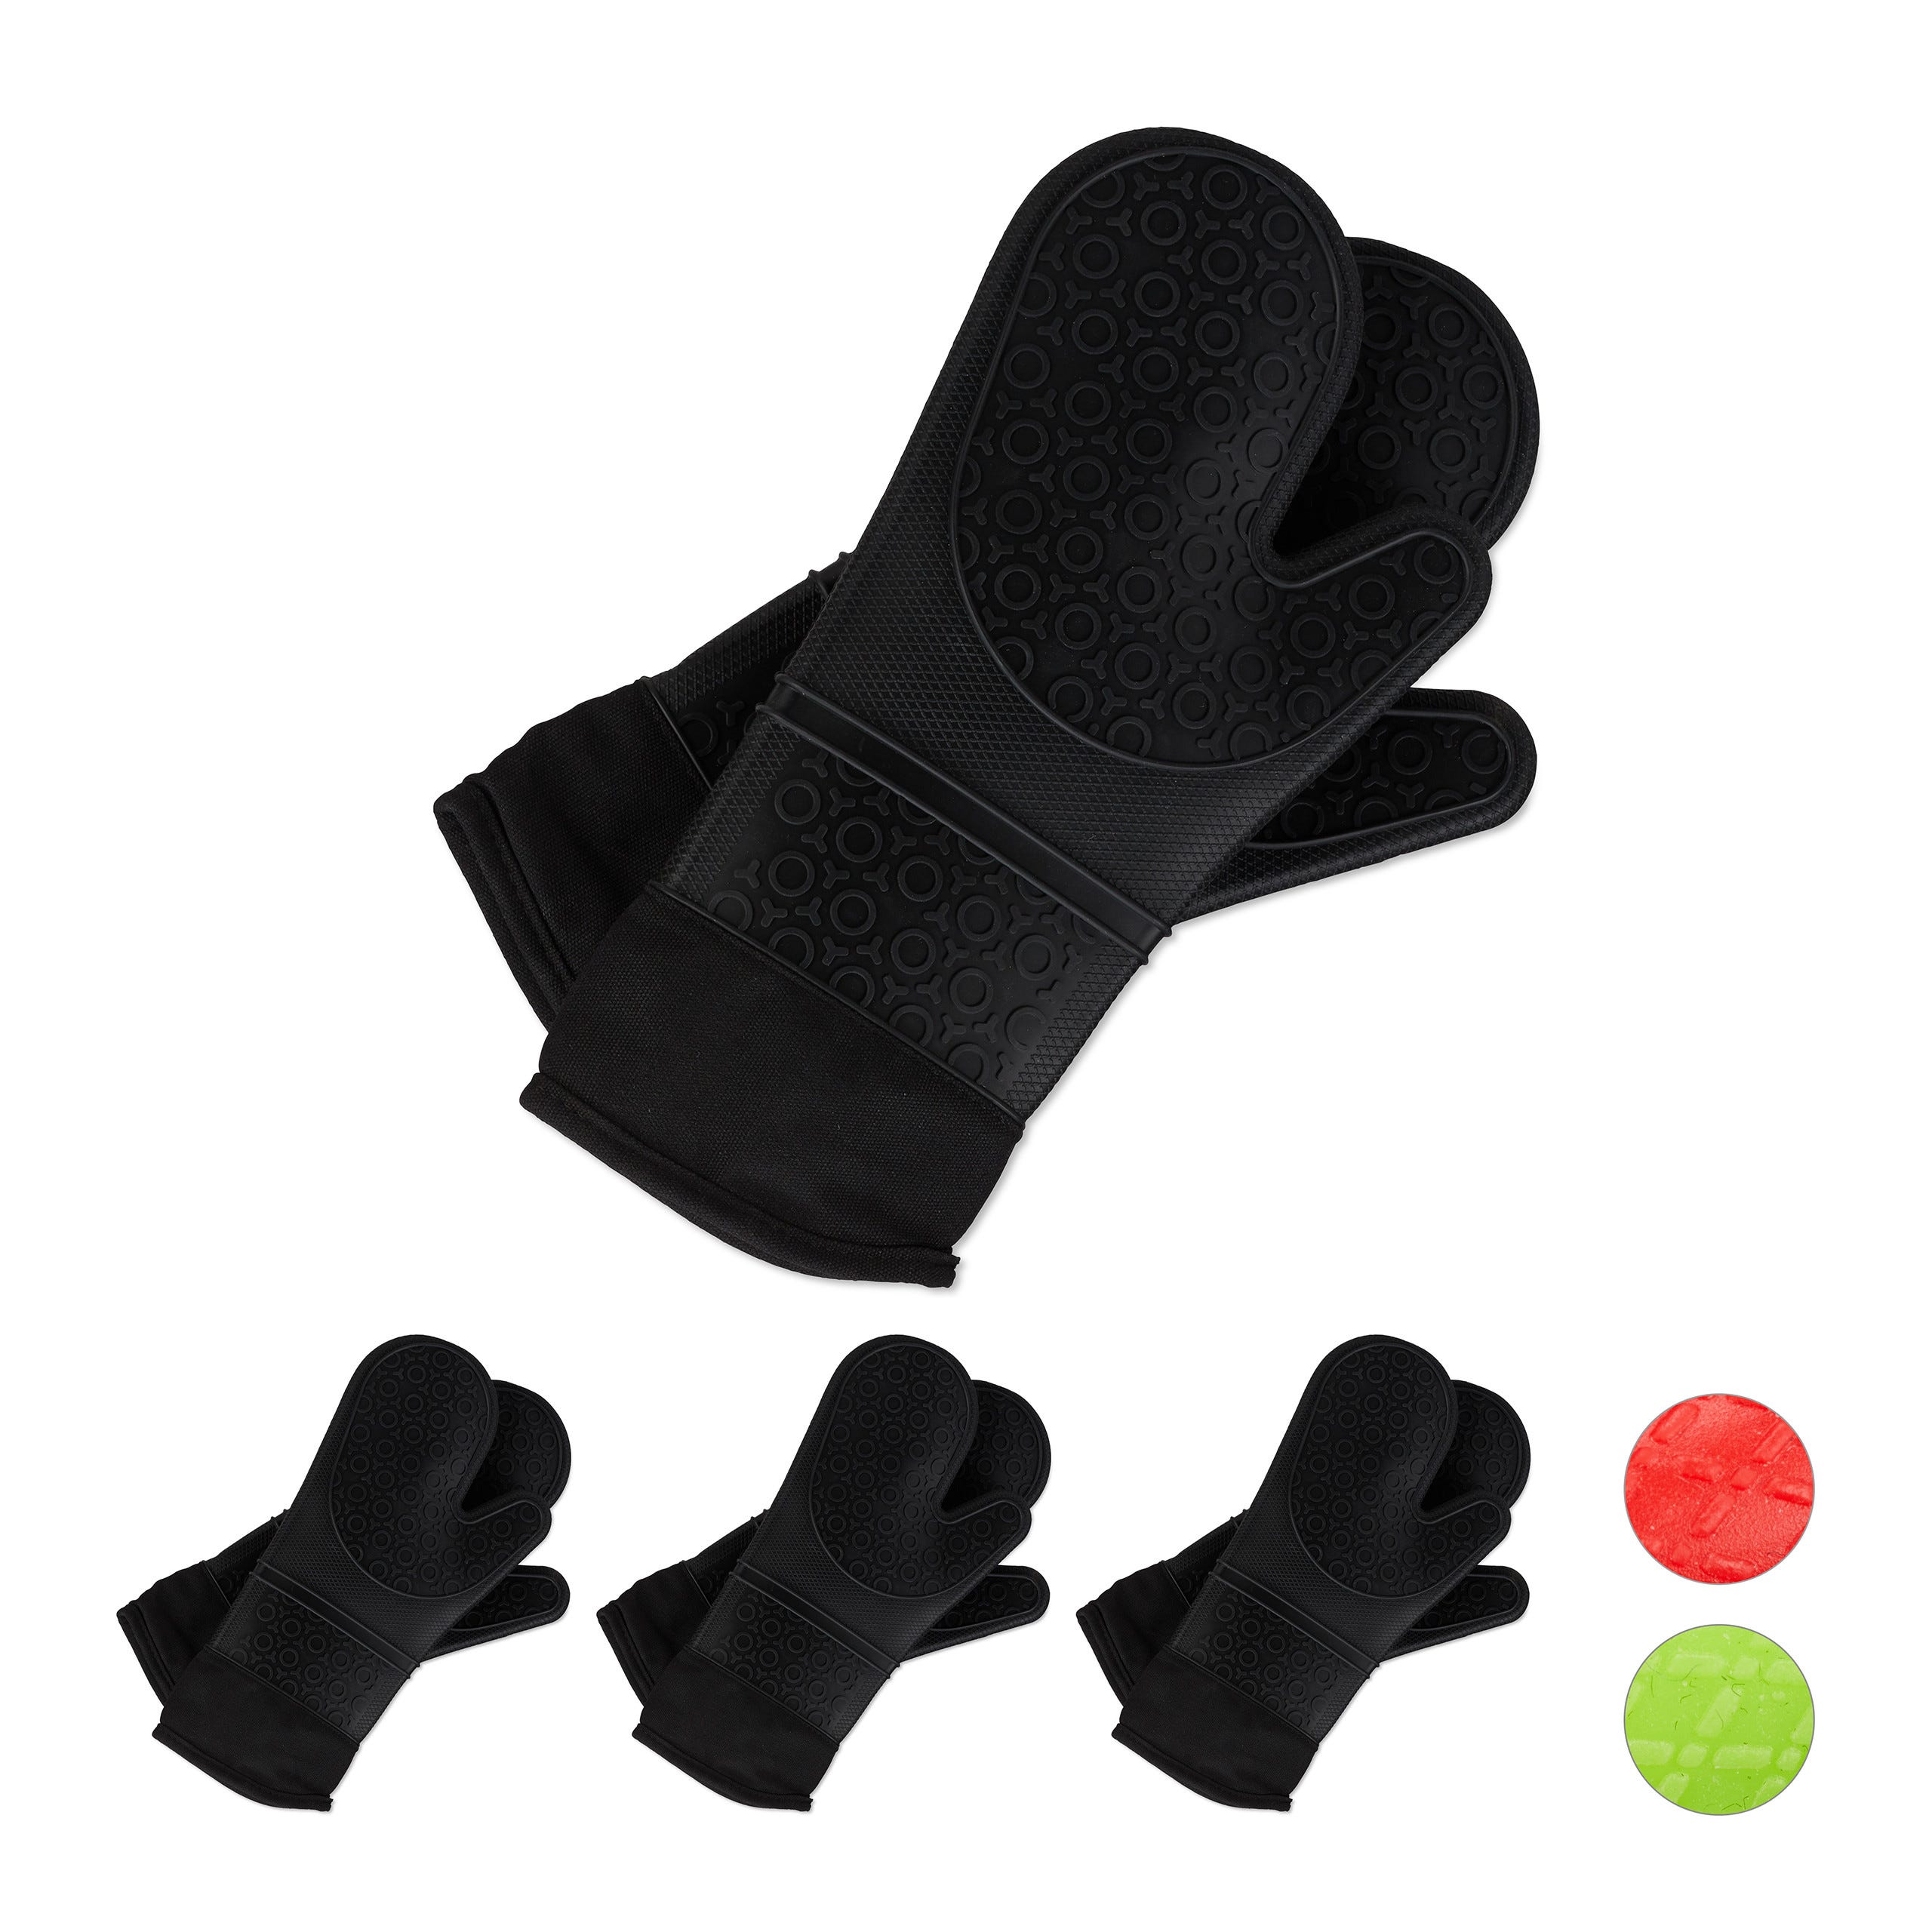 4x paires gants pour four silicone, thermorésistant, maniques de